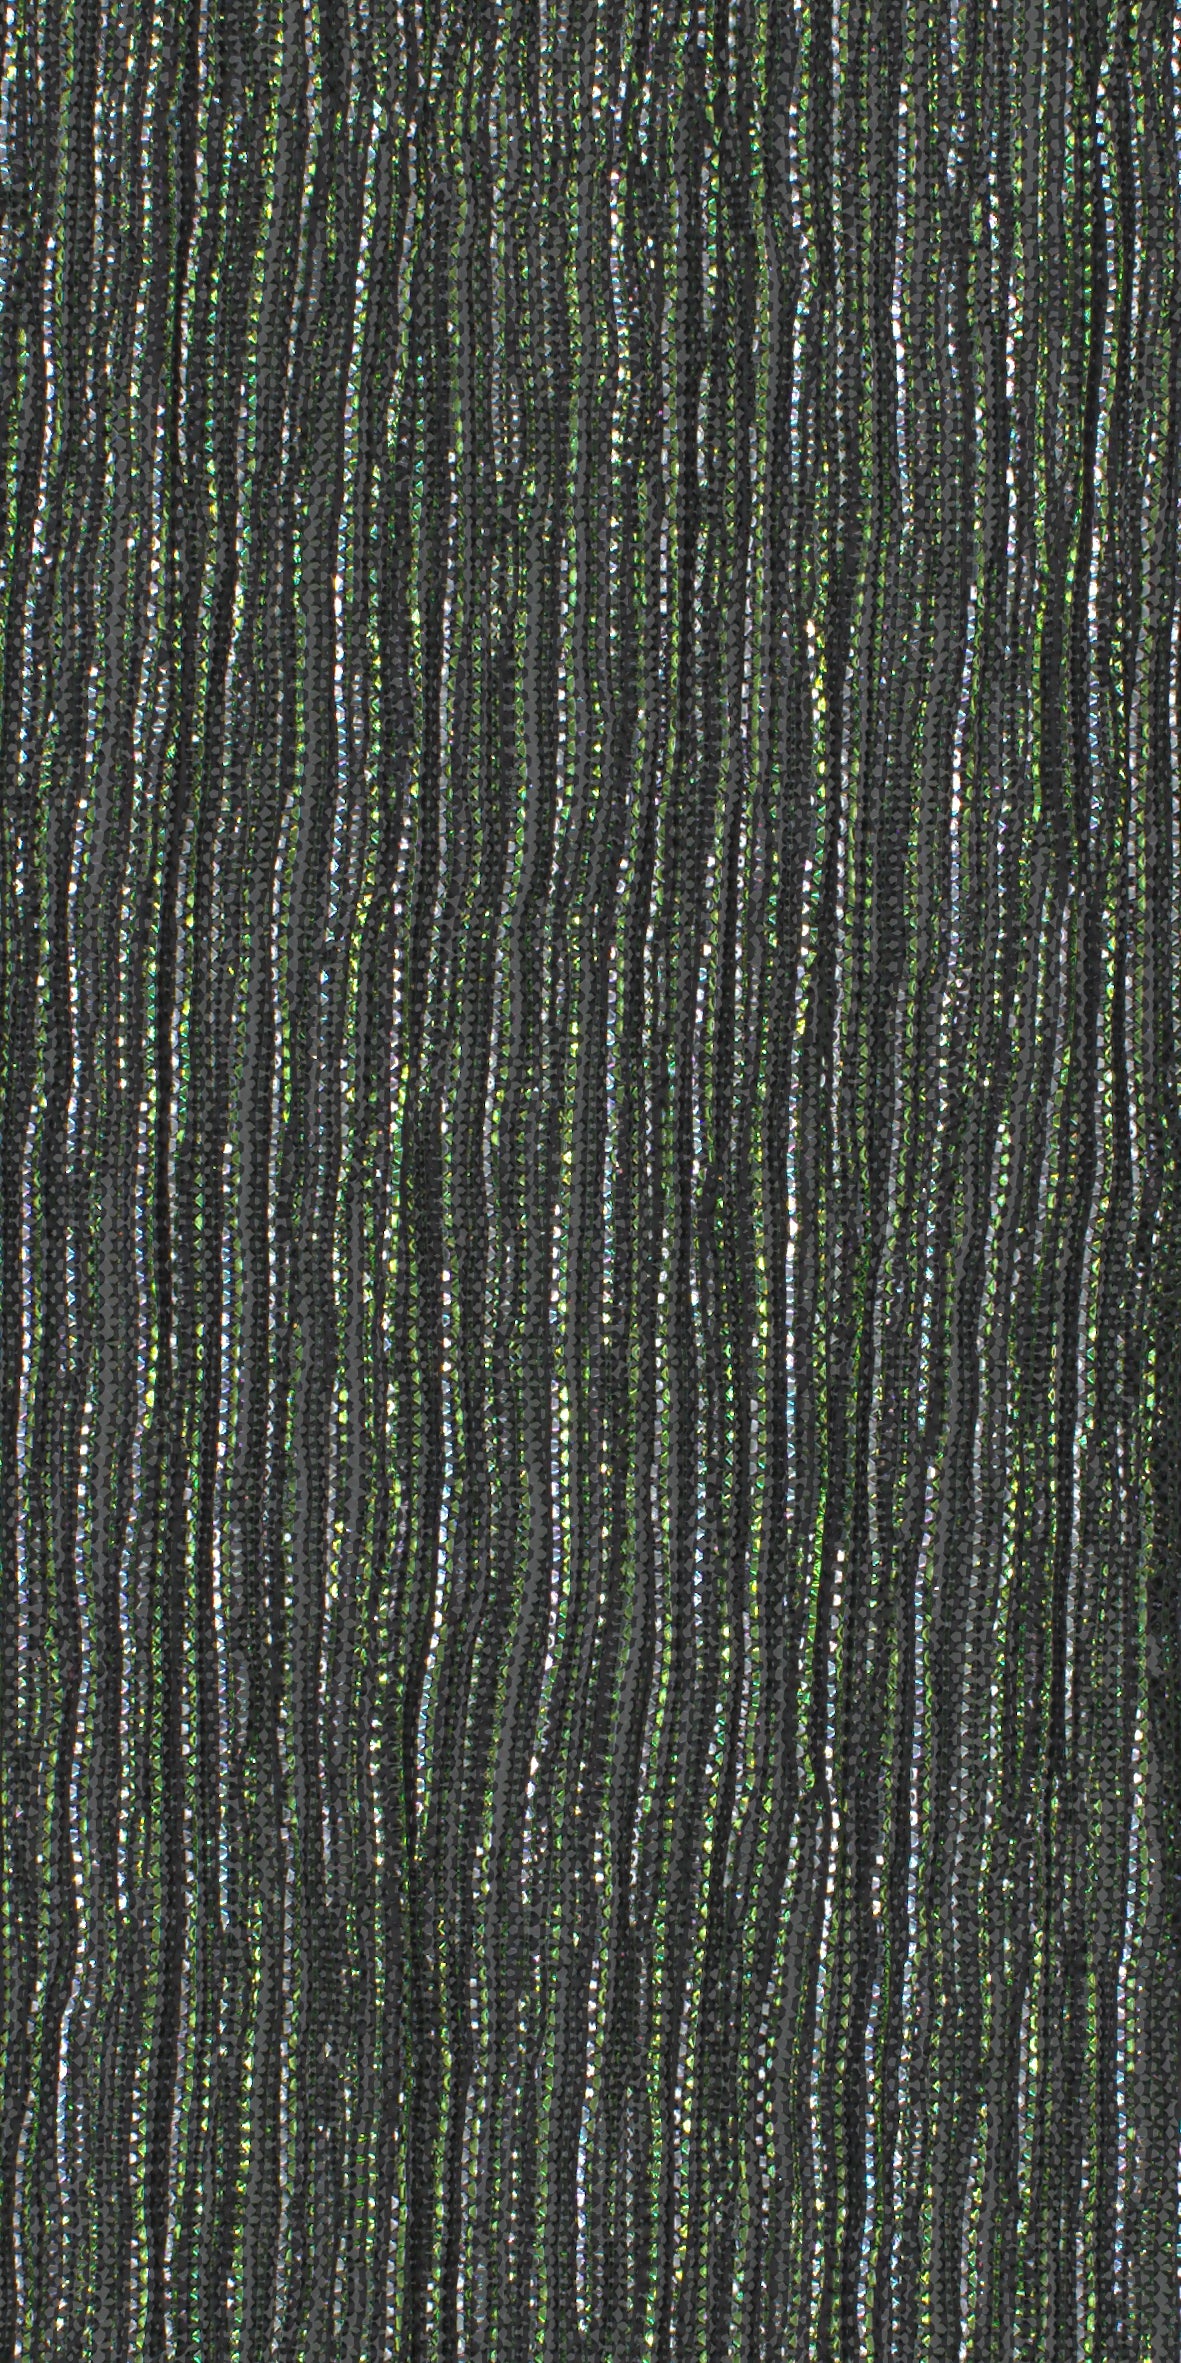 12006-07 Silver Green Metallic Pleat Plain Dyed Blend 126g/yd 56" blend green knit metallic plain dyed pleat ppl new silver Metallic, Pleat - knit fabric - woven fabric - fabric company - fabric wholesale - fabric b2b - fabric factory - high quality fabric - hong kong fabric - fabric hk - acetate fabric - cotton fabric - linen fabric - metallic fabric - nylon fabric - polyester fabric - spandex fabric - chun wing hing - cwh hk - fabric worldwide ship - 針織布 - 梳織布 - 布料公司- 布料批發 - 香港布料 - 秦榮興